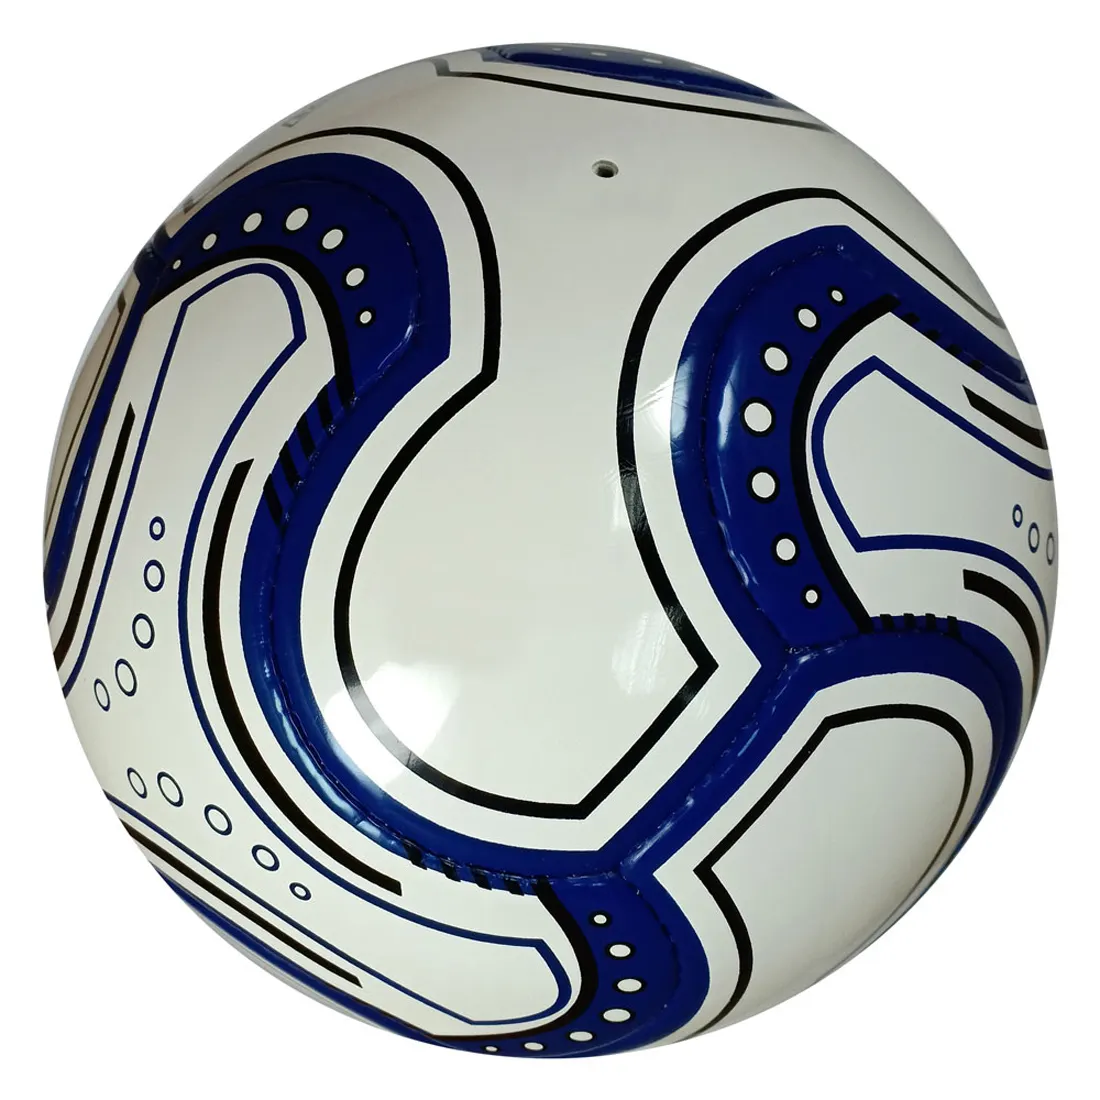 Новый официальный размер 5, новый футбольный мяч из искусственной кожи, тепловое соединение, тренировочный футбол, оптовая продажа, низкая цена